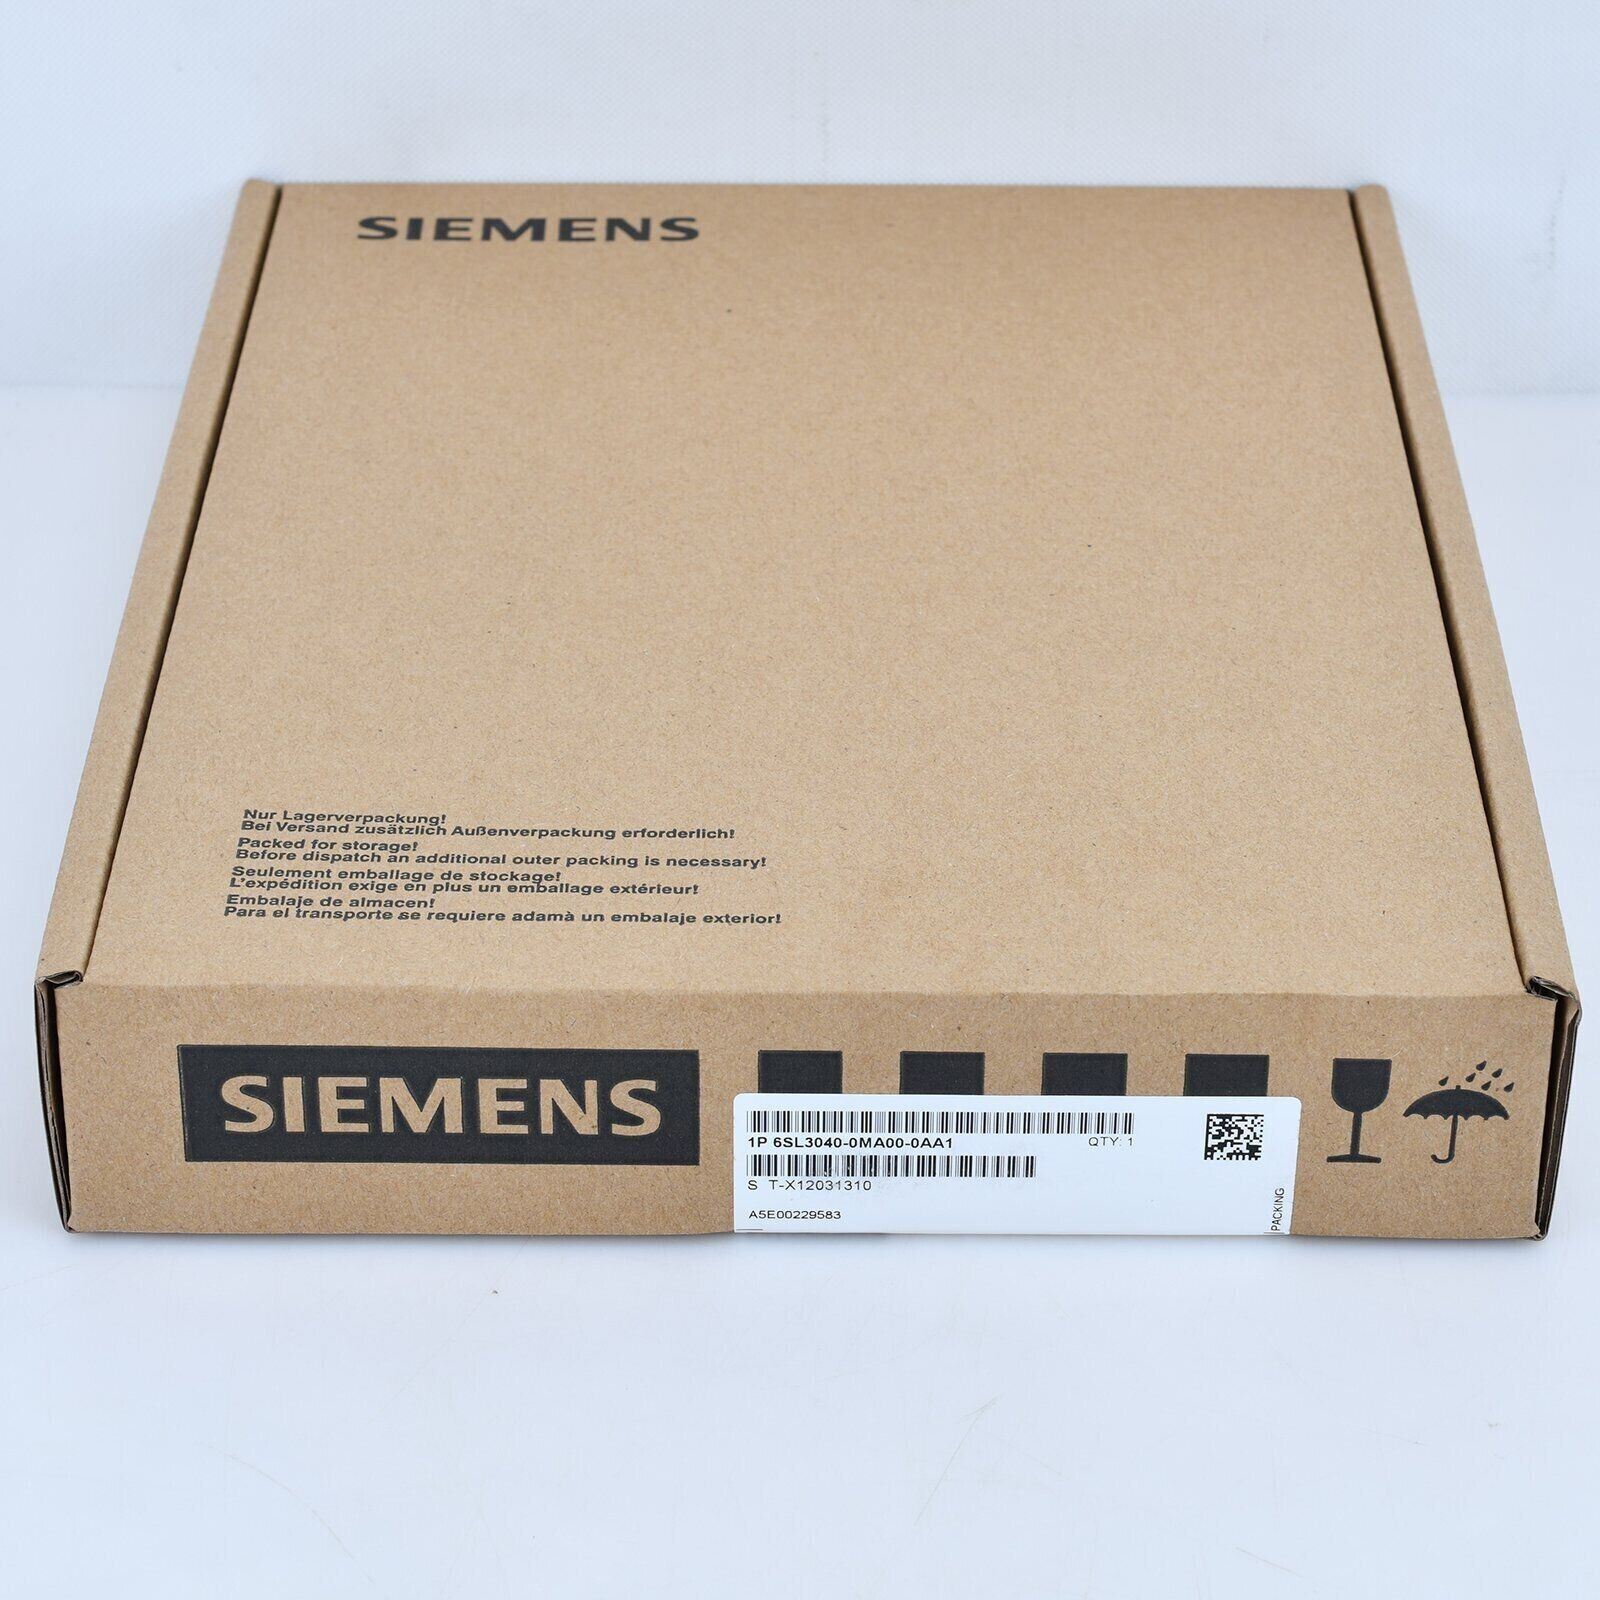 New Siemens 6SL3040-0MA00-0AA1 Unit 6SL3 040-0MA00-0AA1 SINAMICS Controller